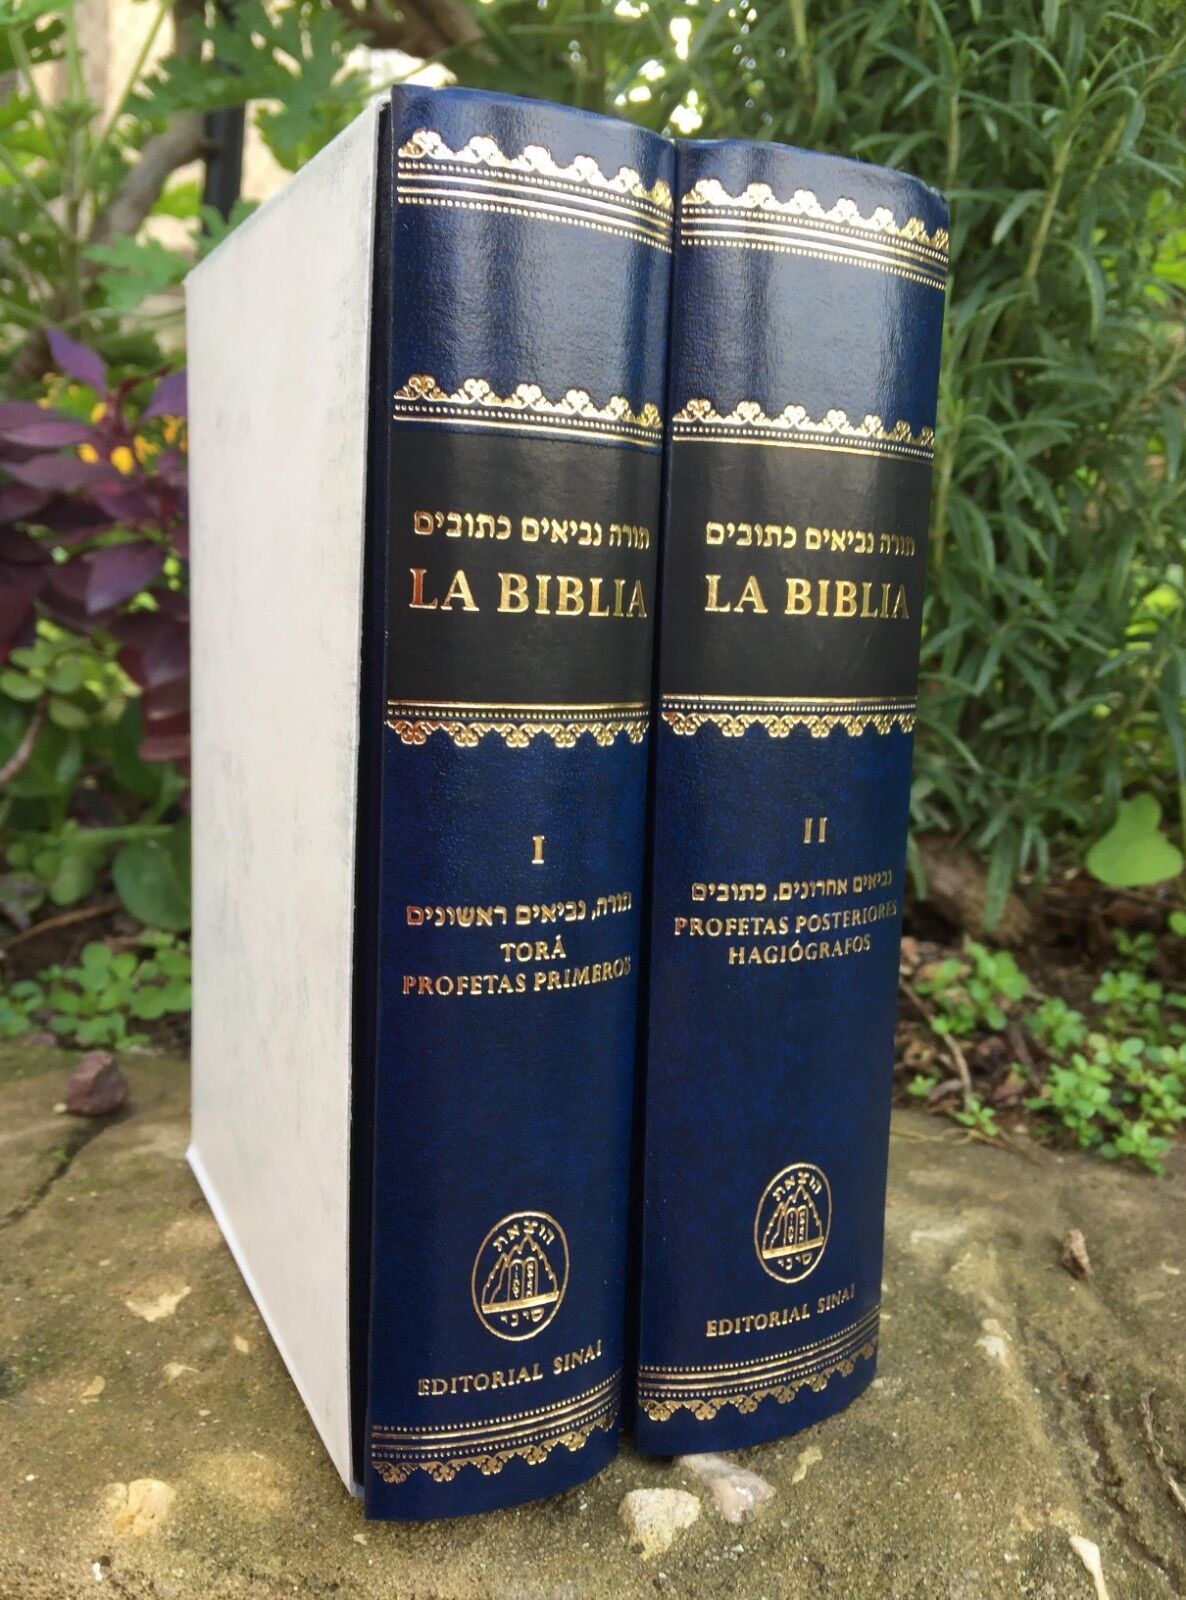 La Biblia - Tora,Profetas,Hagiografos Libro Hebrew With Spanish Translation